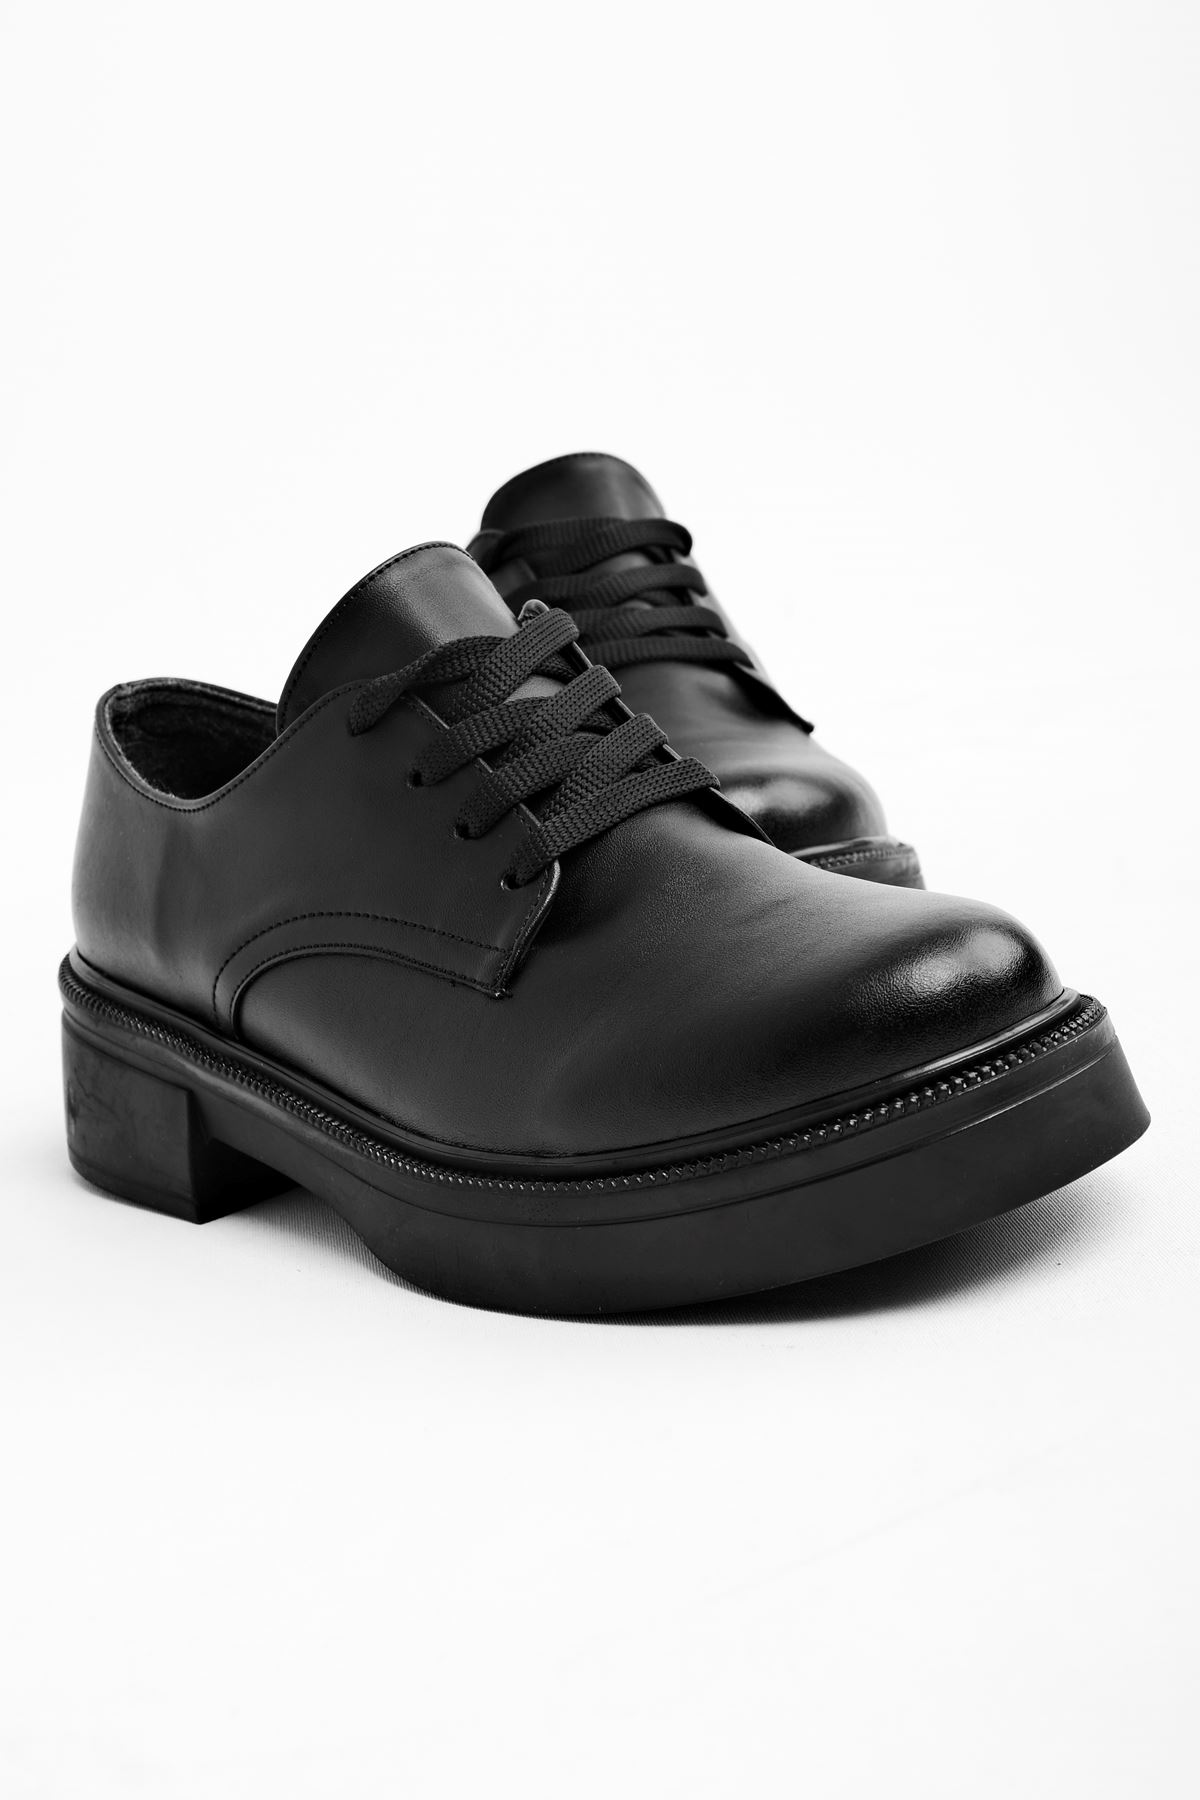 Zenna Kadın Bağcıklı Günlük Ayakkabı-siyah